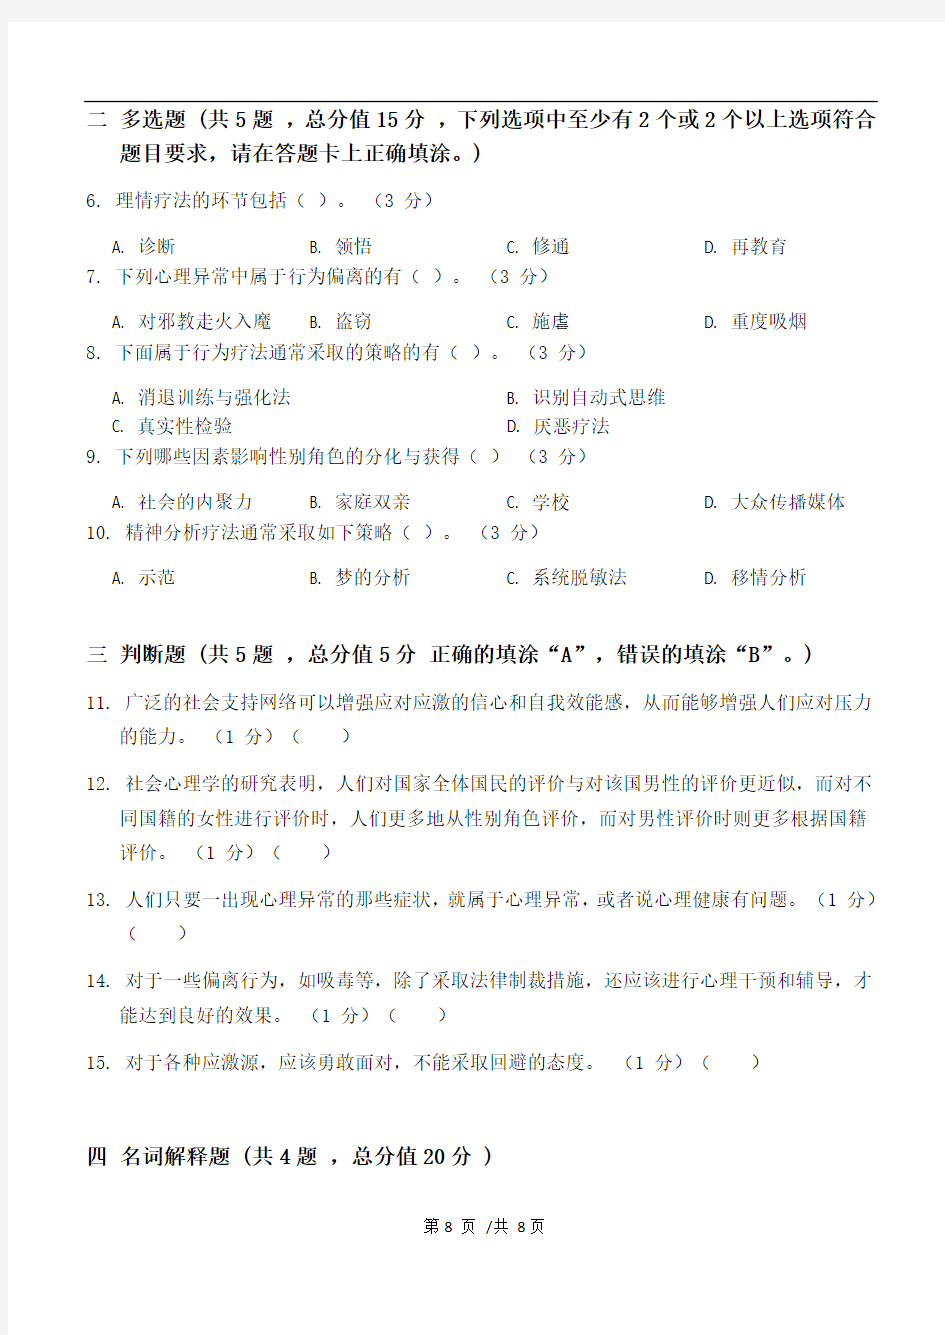 社会心理学第3阶段江南大学练习题答案  共三个阶段,这是其中一个阶段,答案在最后。